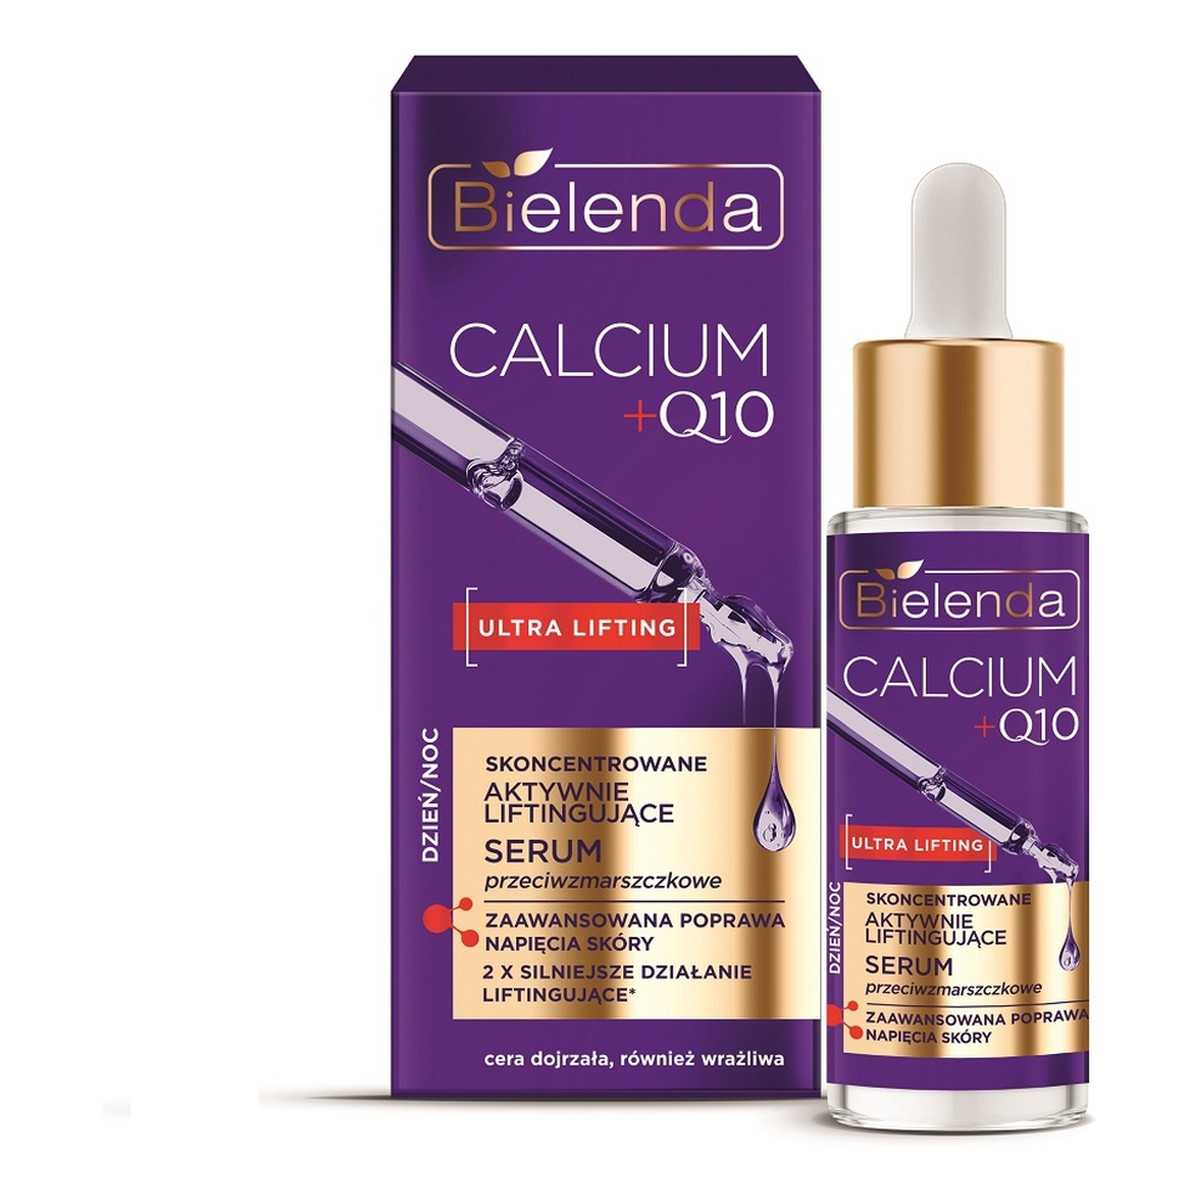 Bielenda Calcium + Q10 skoncentrowane aktywnie liftingujące serum przeciwzmarszczkowe dzień/noc